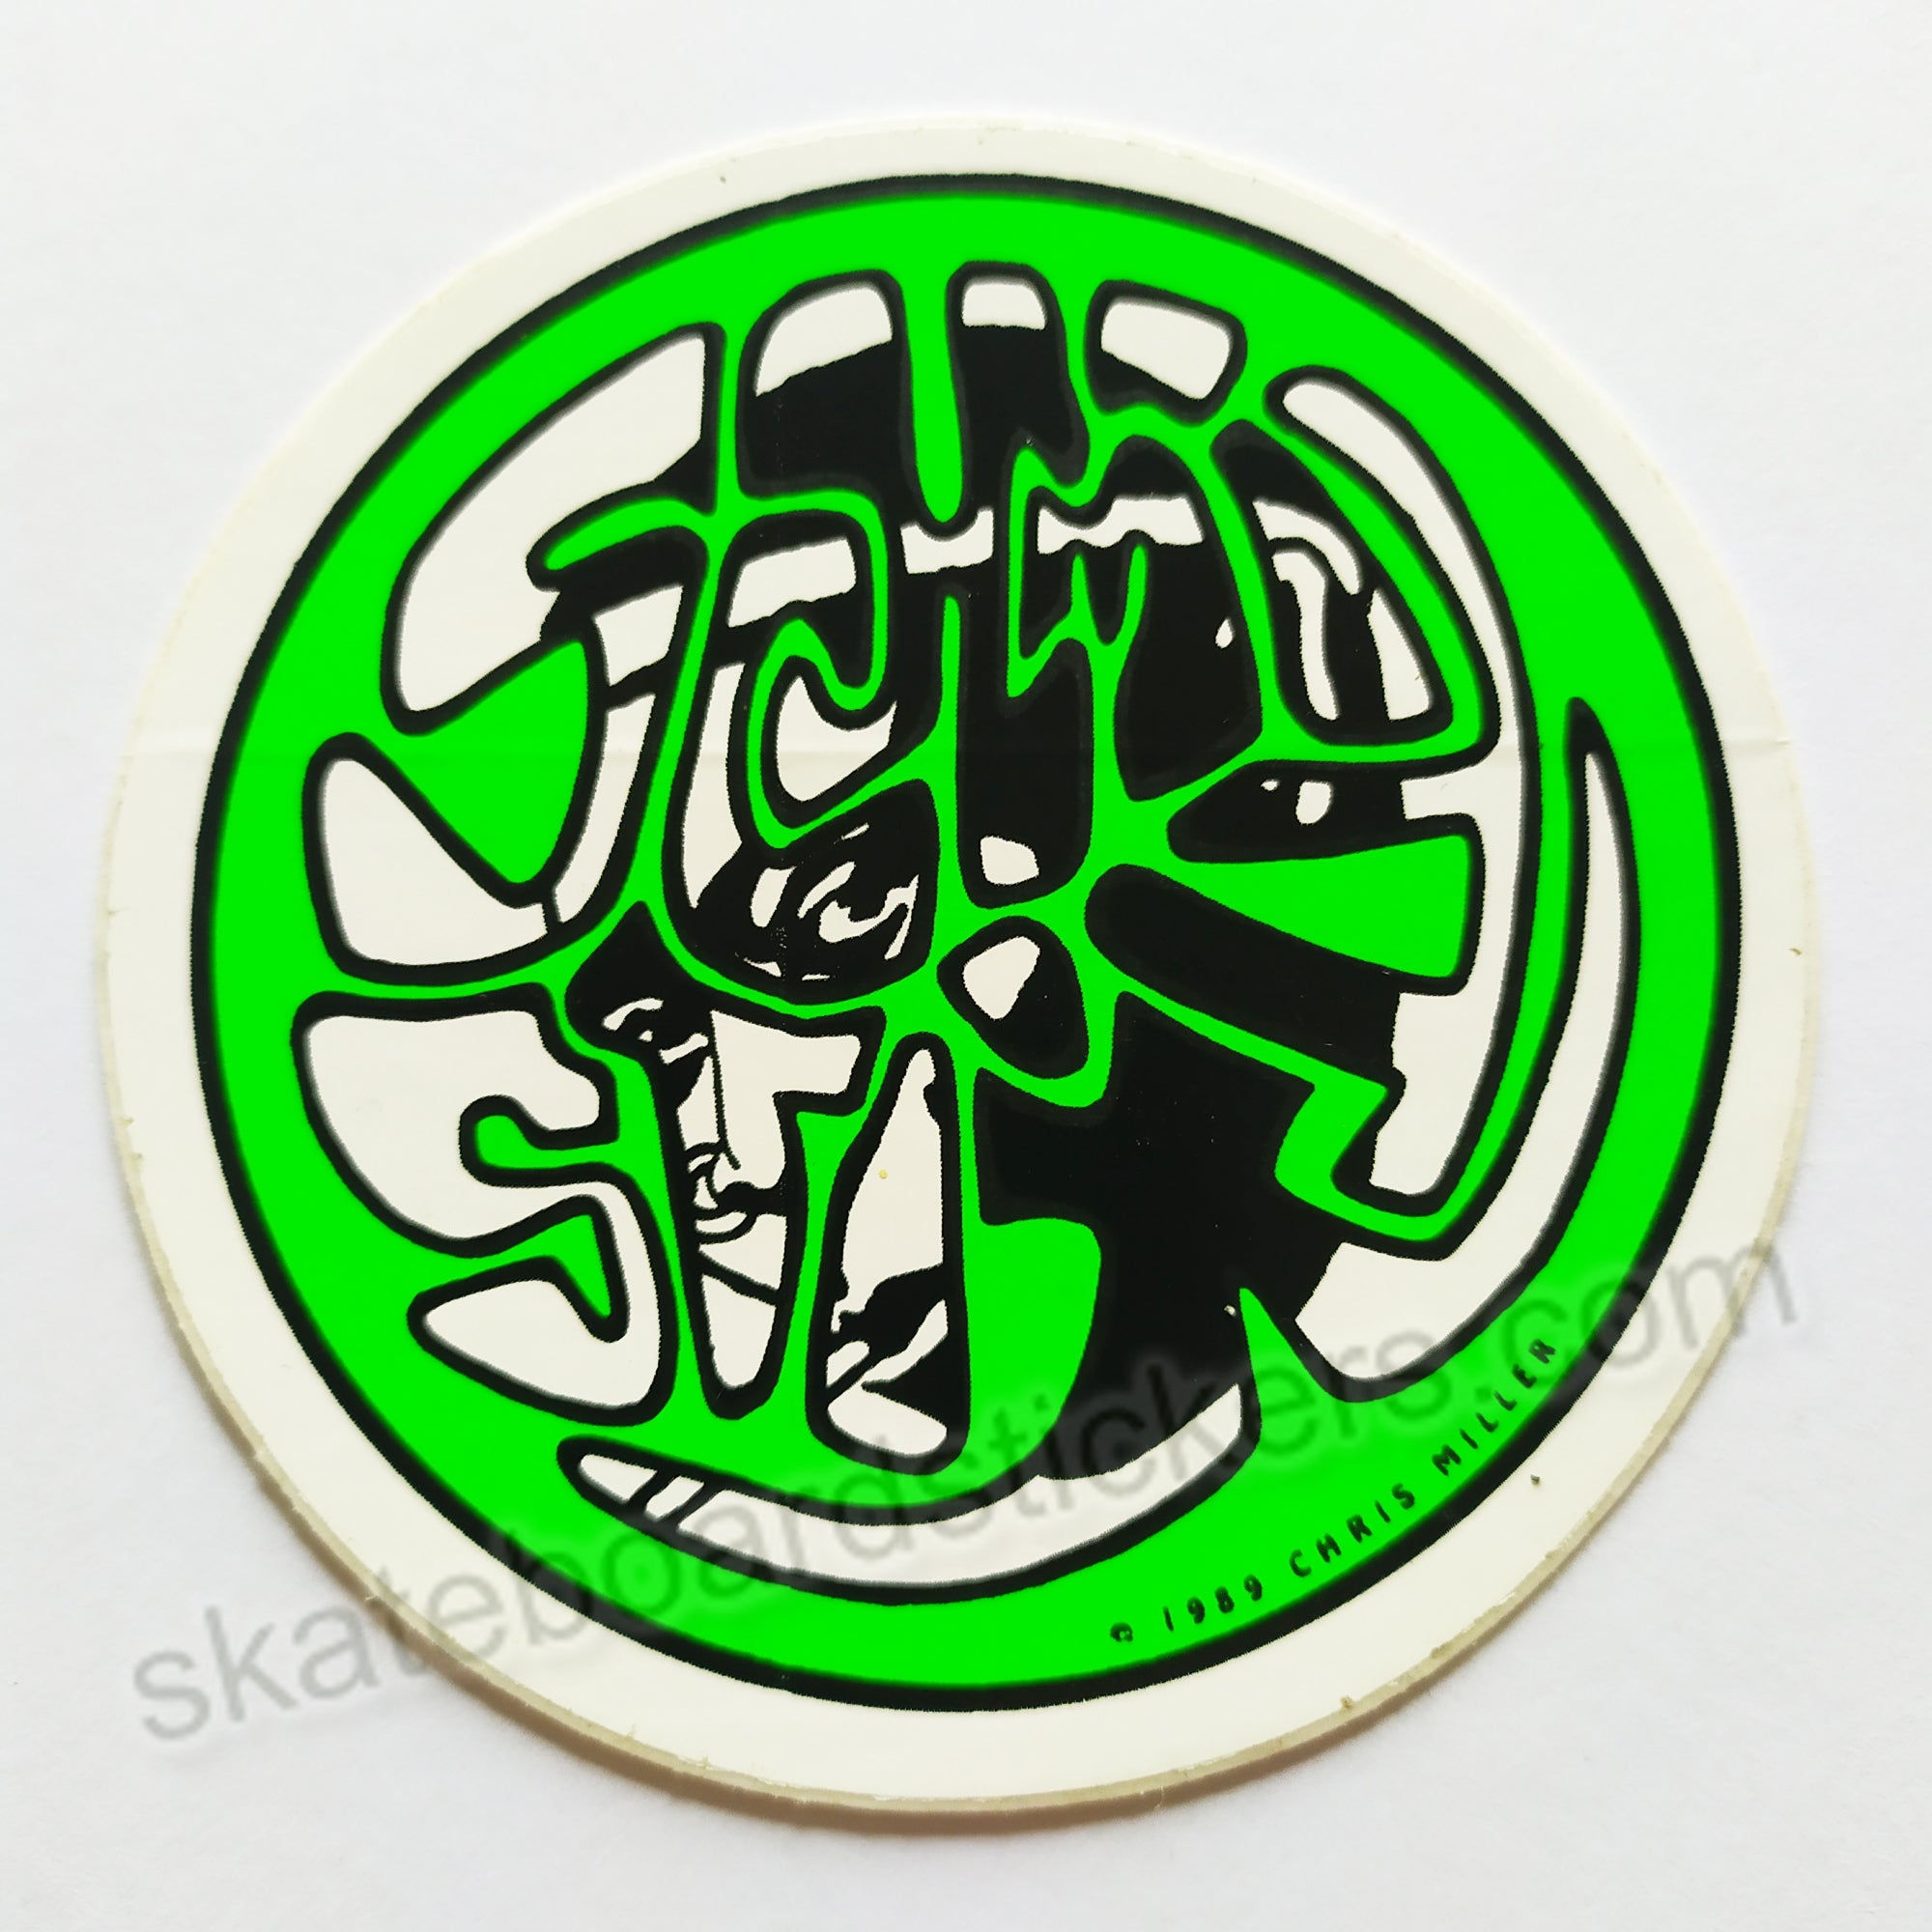 Schmitt Stix - Silly Stix Skateboard Sticker - green - SkateboardStickers.com